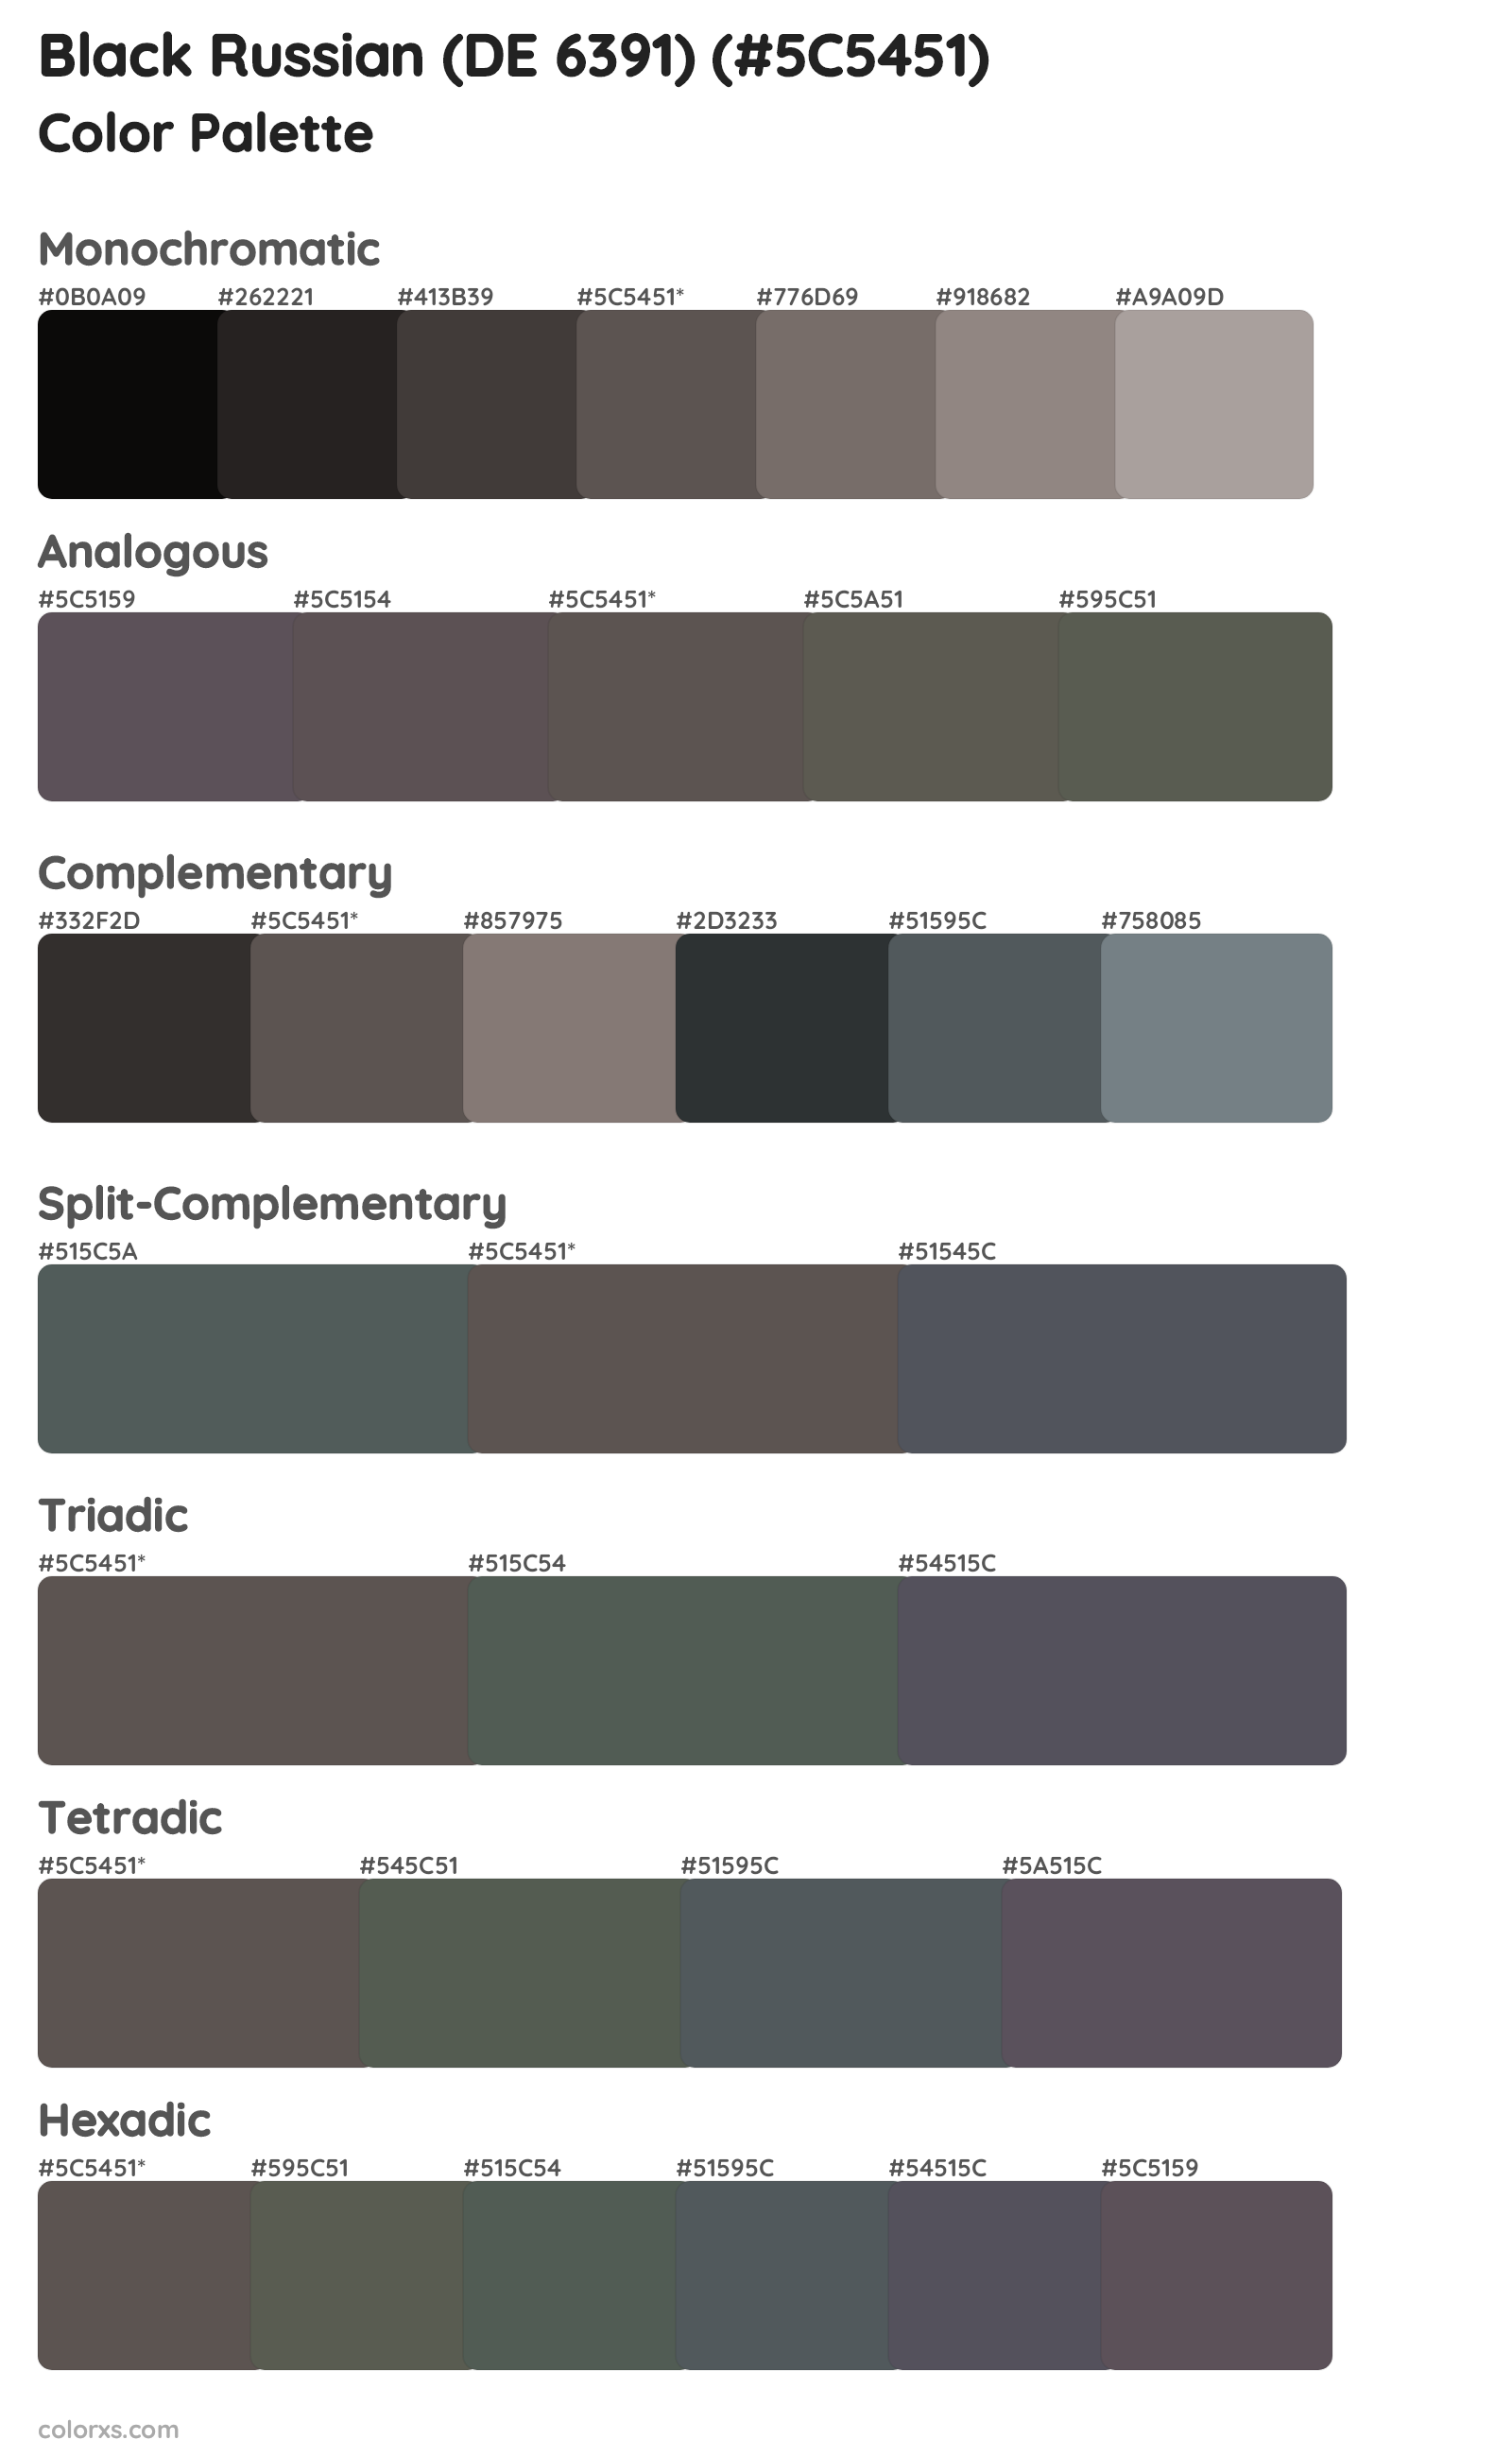 Black Russian (DE 6391) Color Scheme Palettes